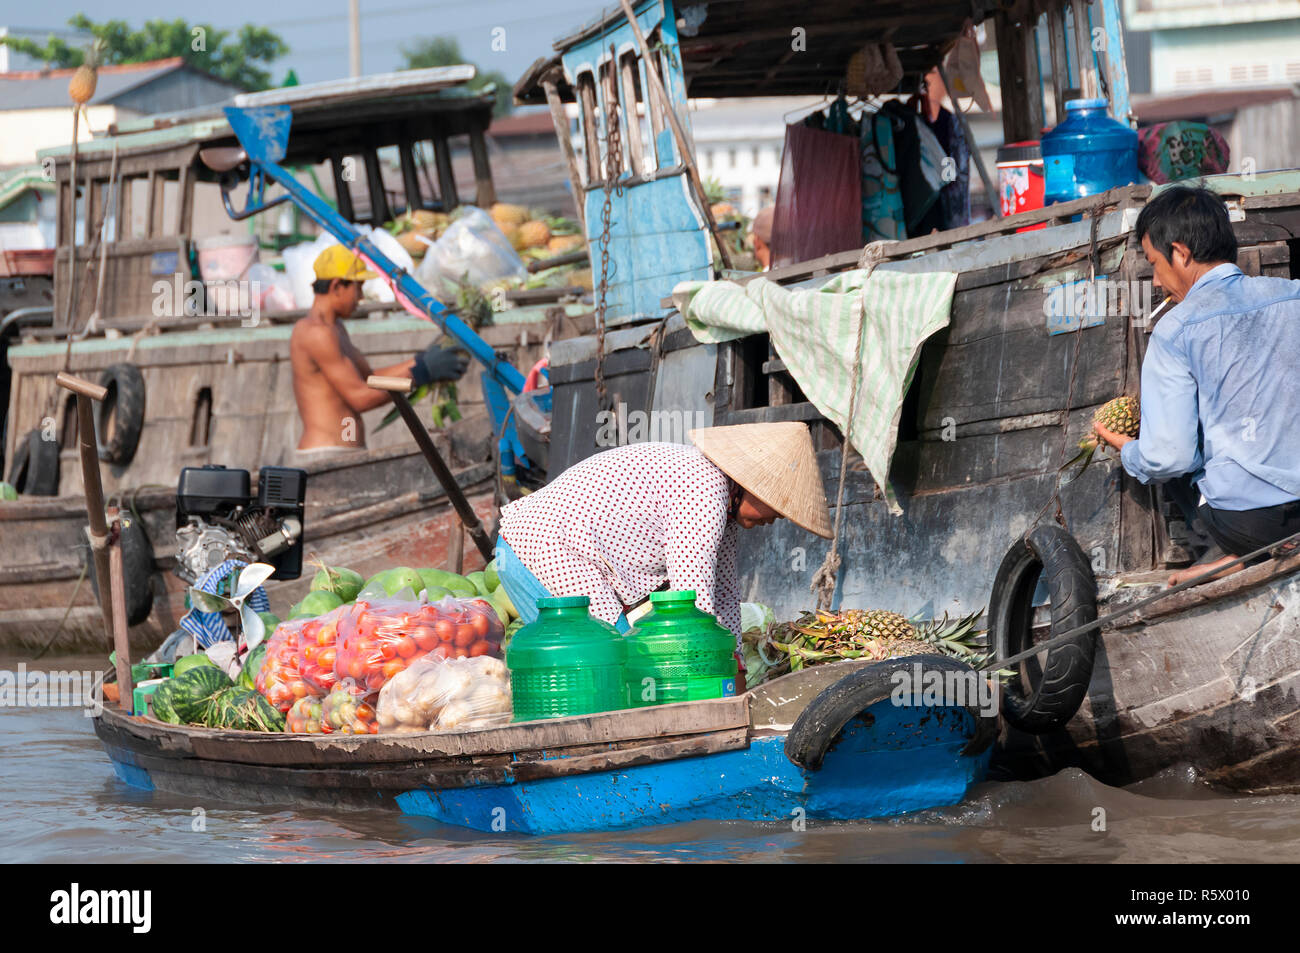 Boatwoman femelle vente des produits mains sur un ananas à un acheteur sur un autre bateau en bois au marché flottant de Cai Rang, Province de Can Tho, Vietnam Banque D'Images